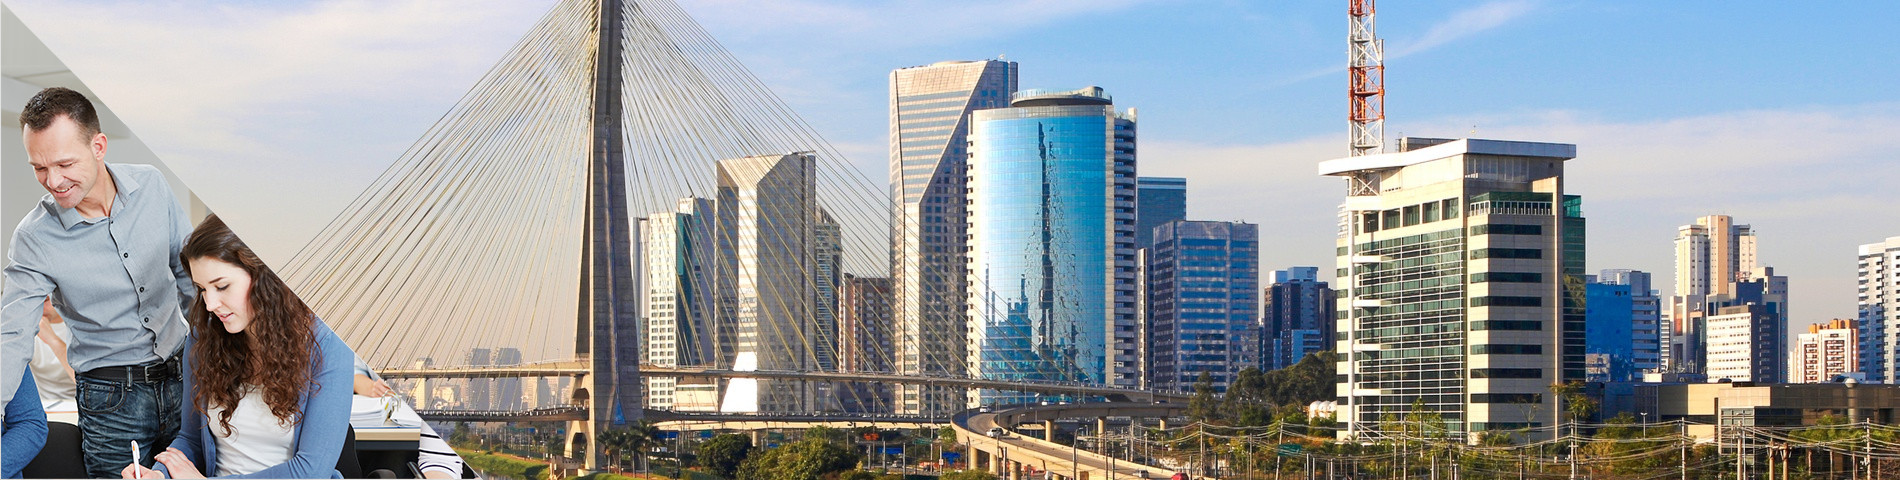 Sao Paulo - Yhdistetty: ryhmä + yksilö